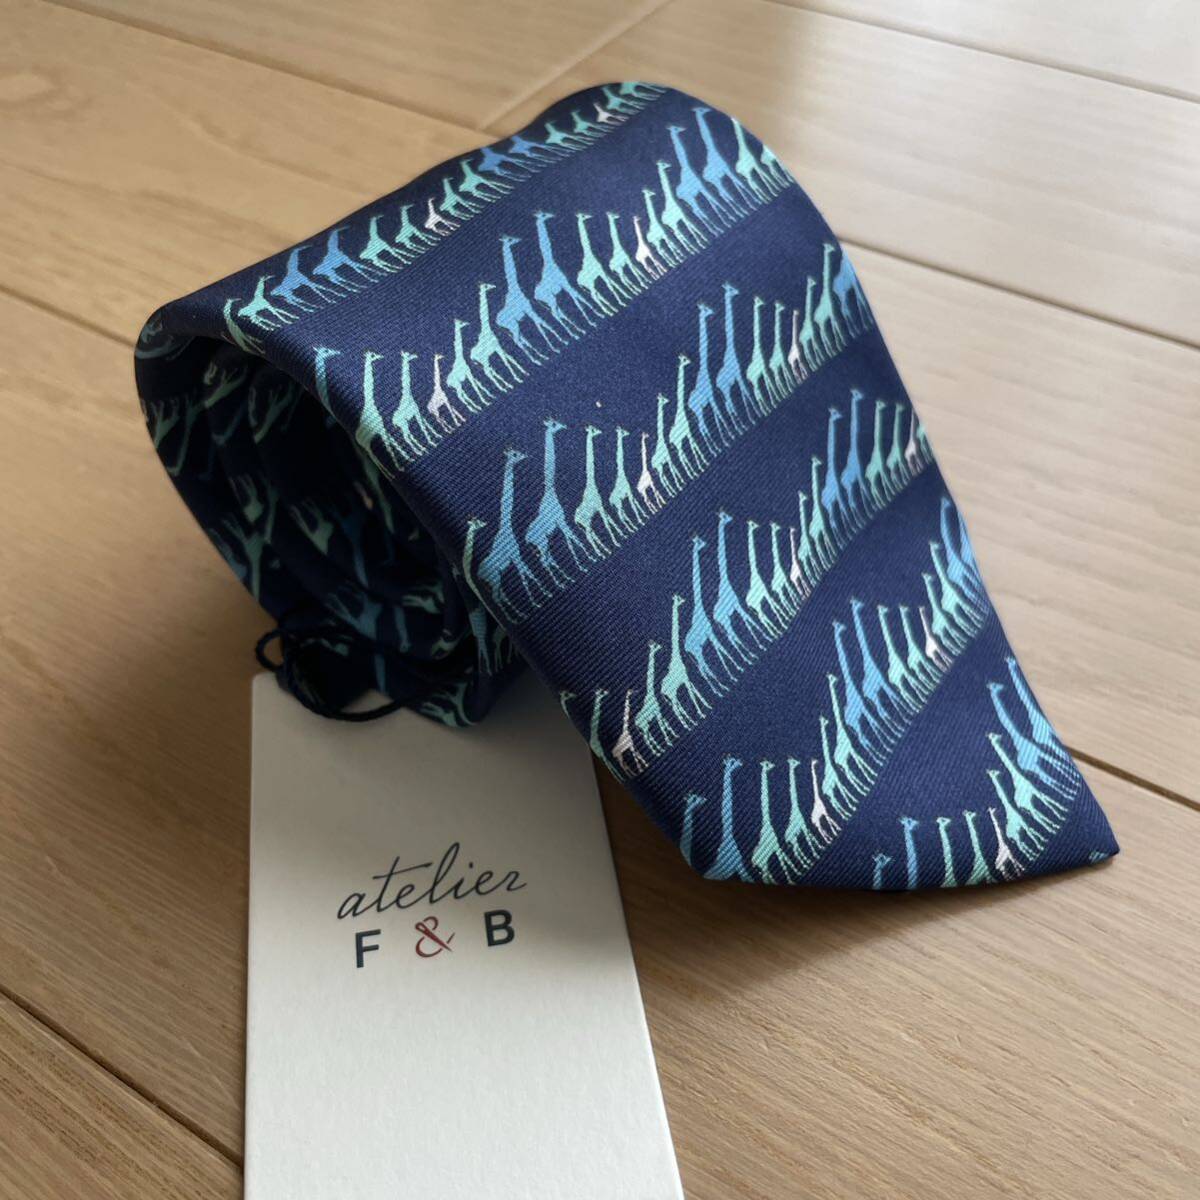  Beams . покупка atelire F&B шелк галстук новый товар не использовался темно-синий 